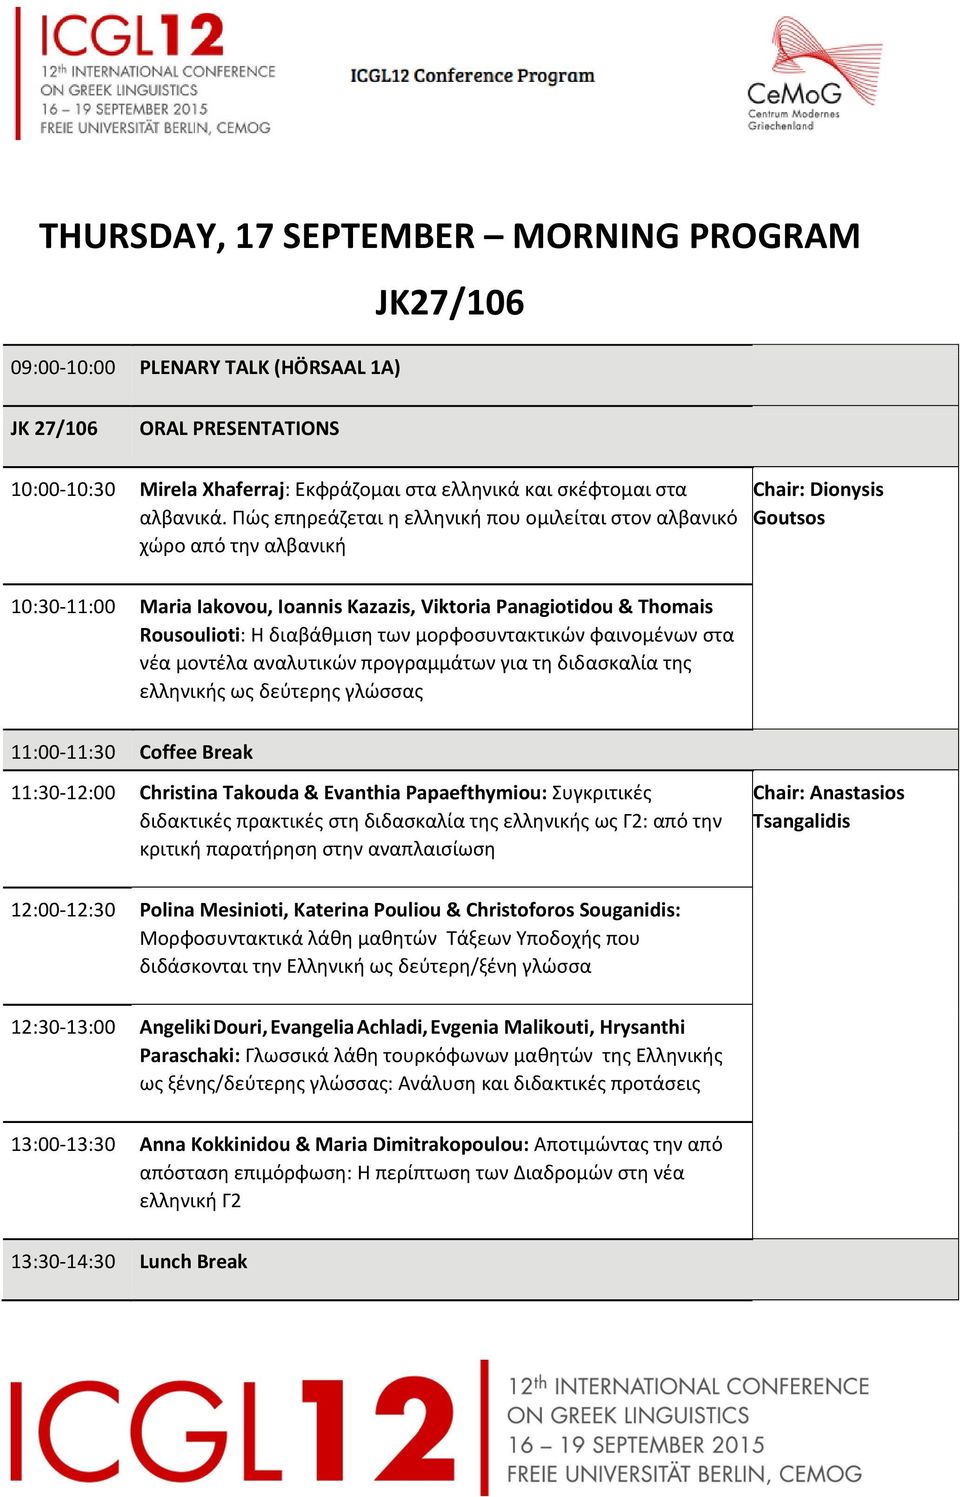 διαβάθμιση των μορφοσυντακτικών φαινομένων στα νέα μοντέλα αναλυτικών προγραμμάτων για τη διδασκαλία της ελληνικής ως δεύτερης γλώσσας 11:00 11:30 Coffee Break 11:30 12:00 Christina Takouda &